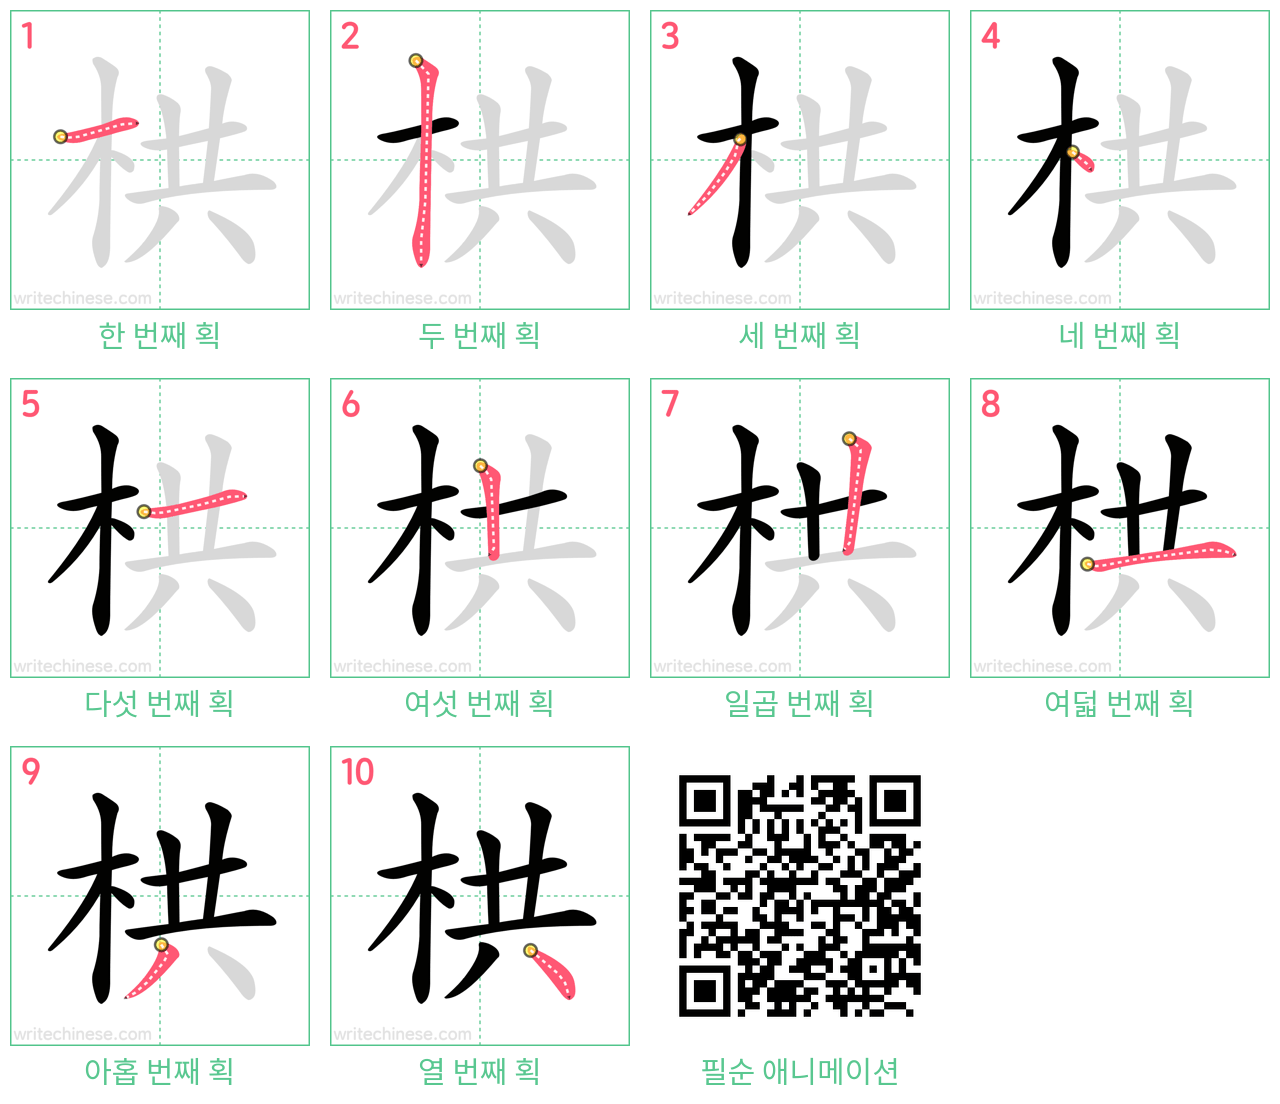 栱 step-by-step stroke order diagrams